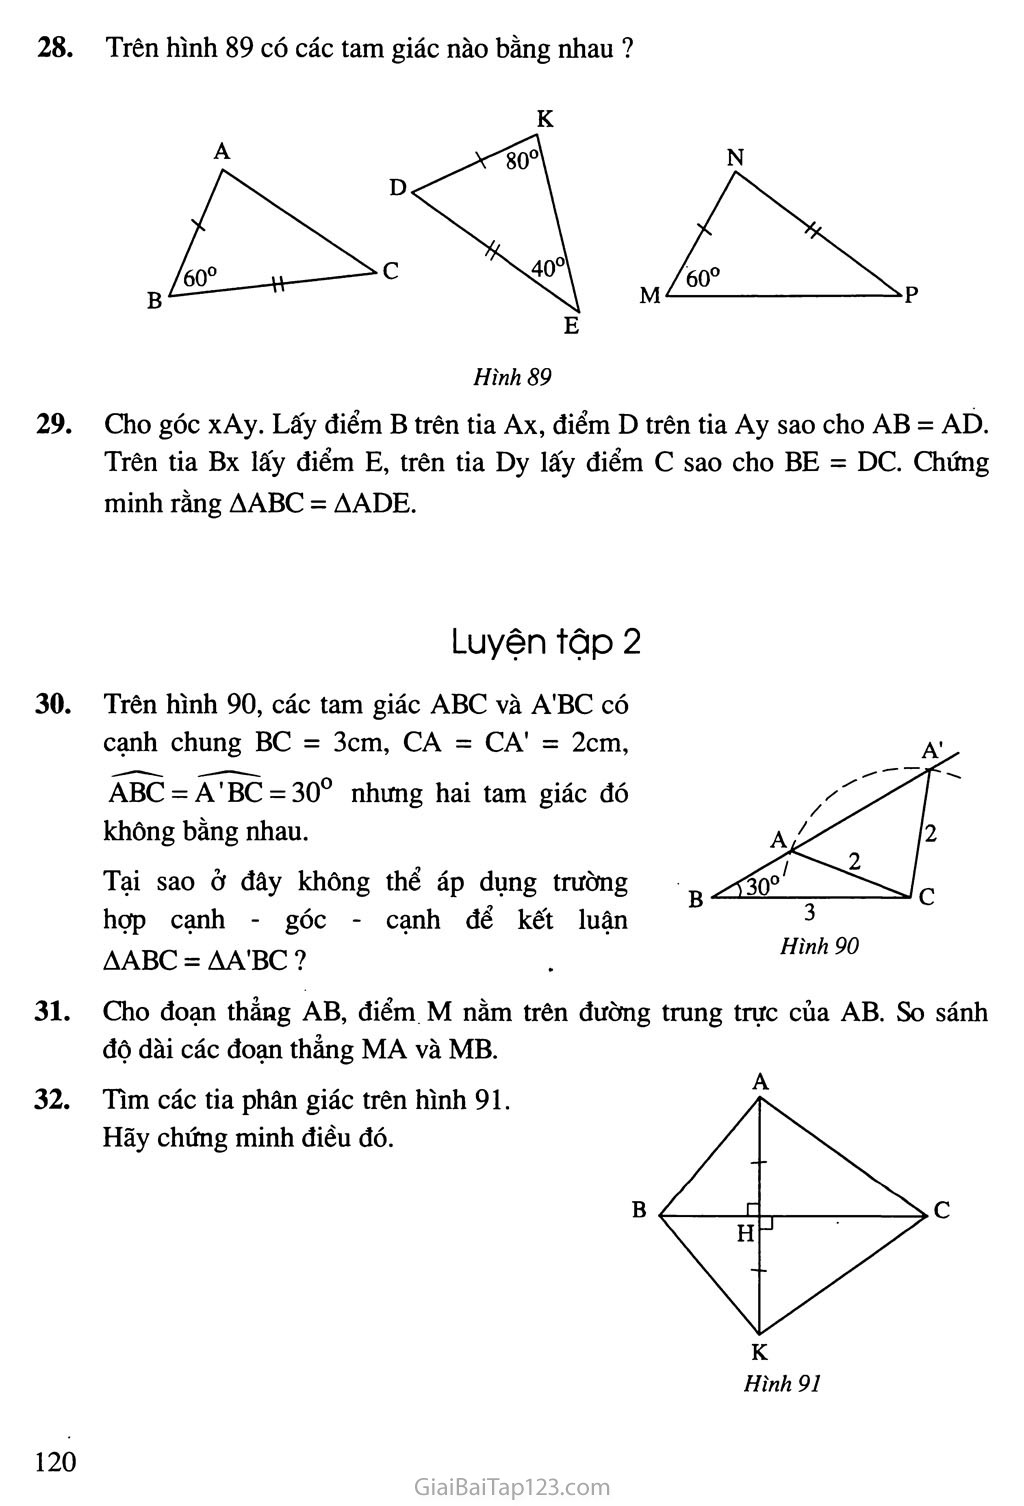 Bài 4. Trường hợp bằng nhau thứ hai của tam giác: cạnh - góc - cạnh (c. g. c) trang 4